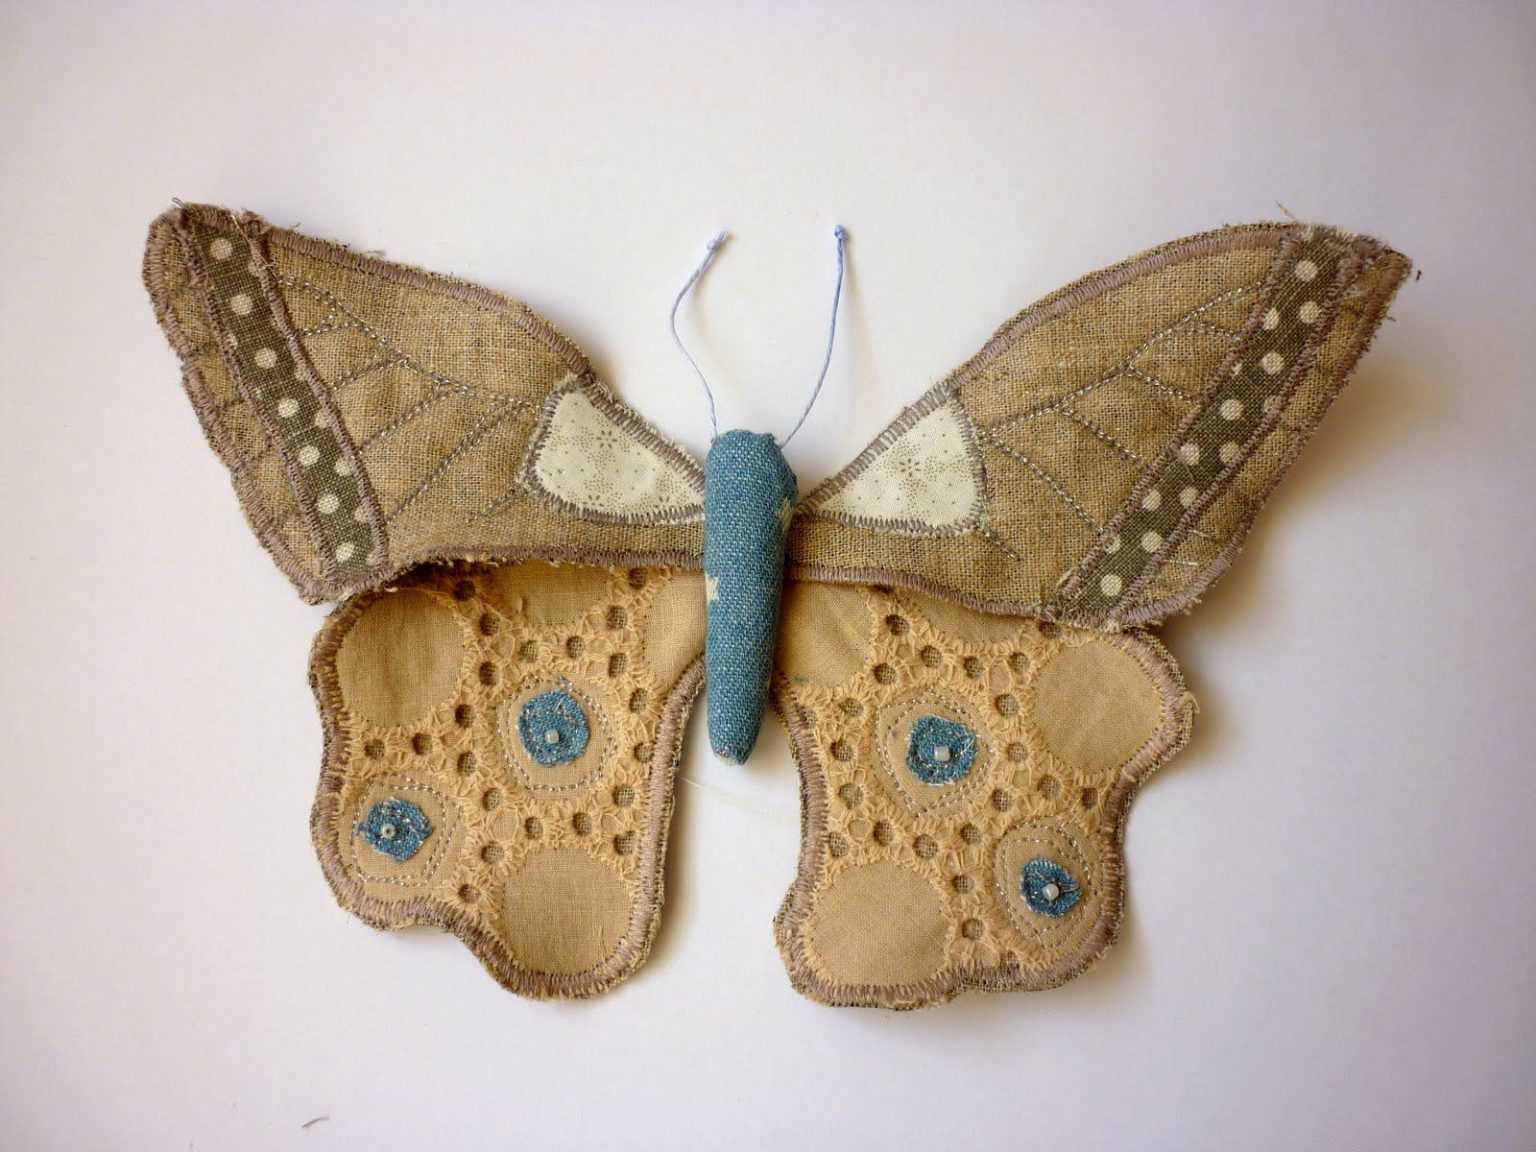 Бабочки на шею: своими руками из ткани создаем модный аксессуар для стильных мужчин